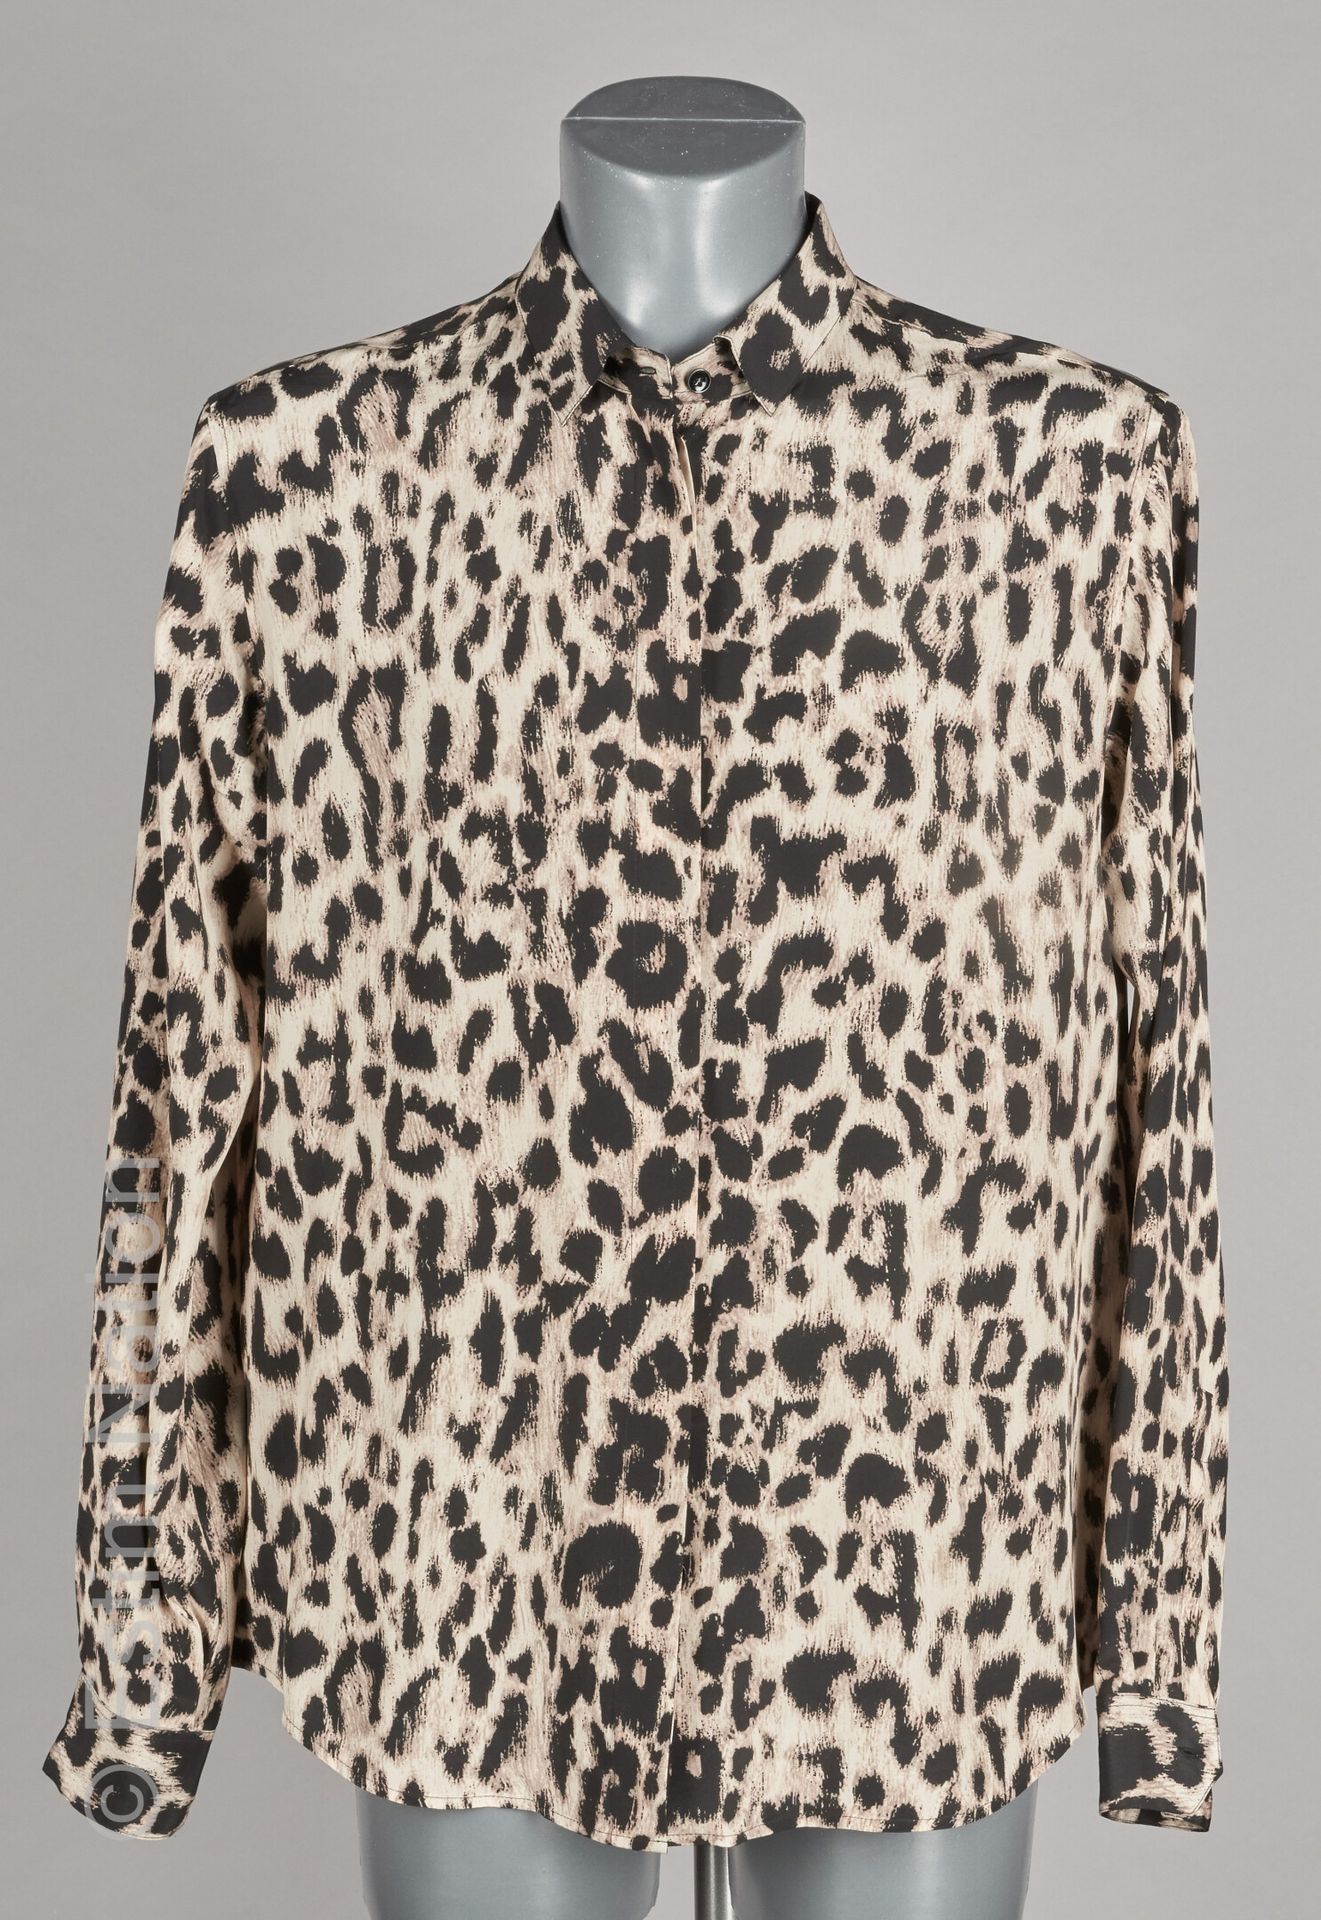 SAINT LAURENT PARIS (2017) Leopard print silk shirt (Sizes 44)